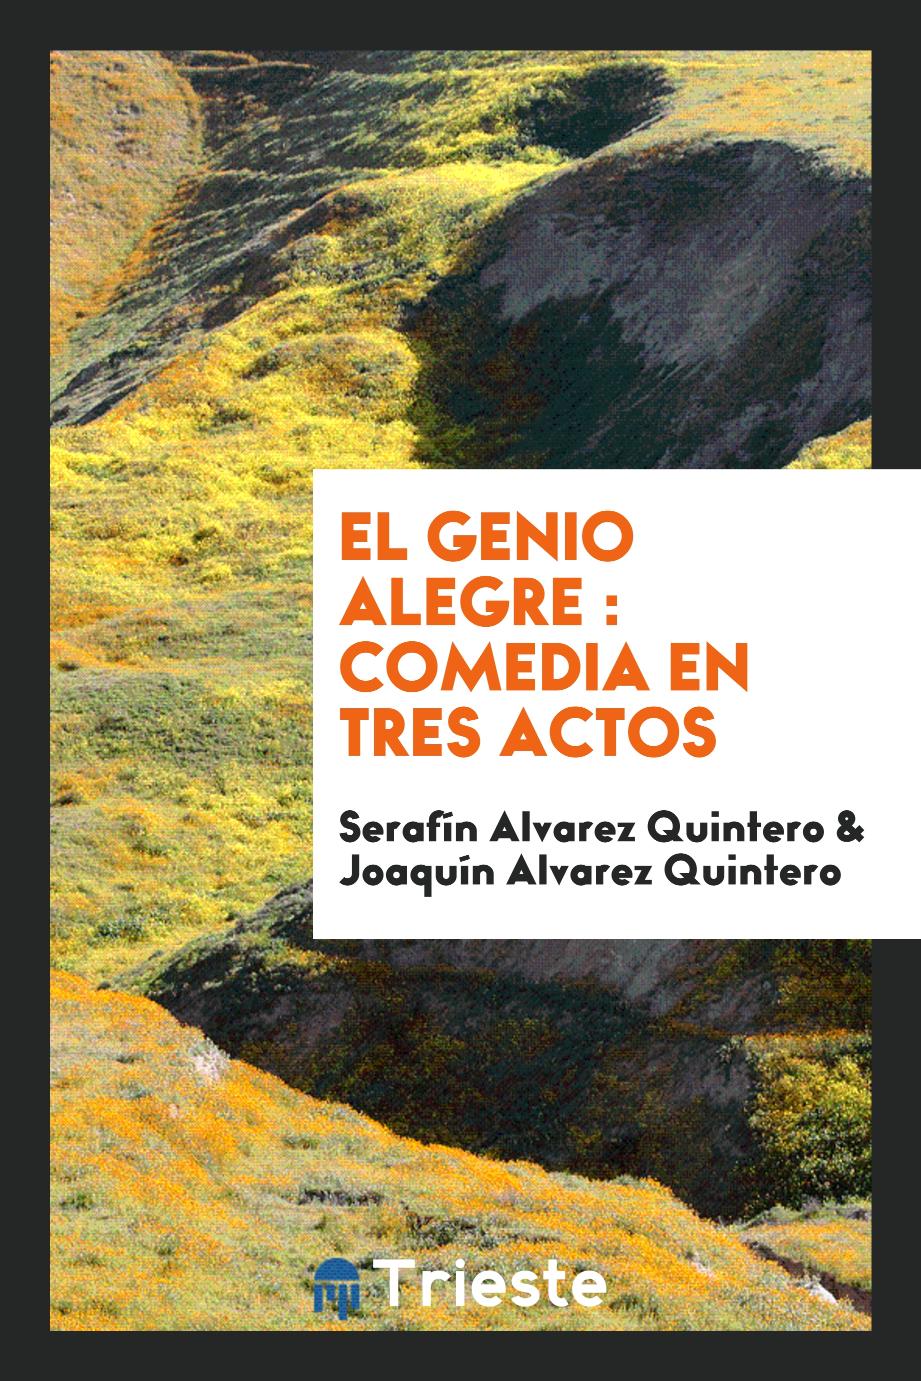 Serafín Alvarez Quintero, Joaquín Alvarez Quintero - El genio alegre : comedia en tres actos